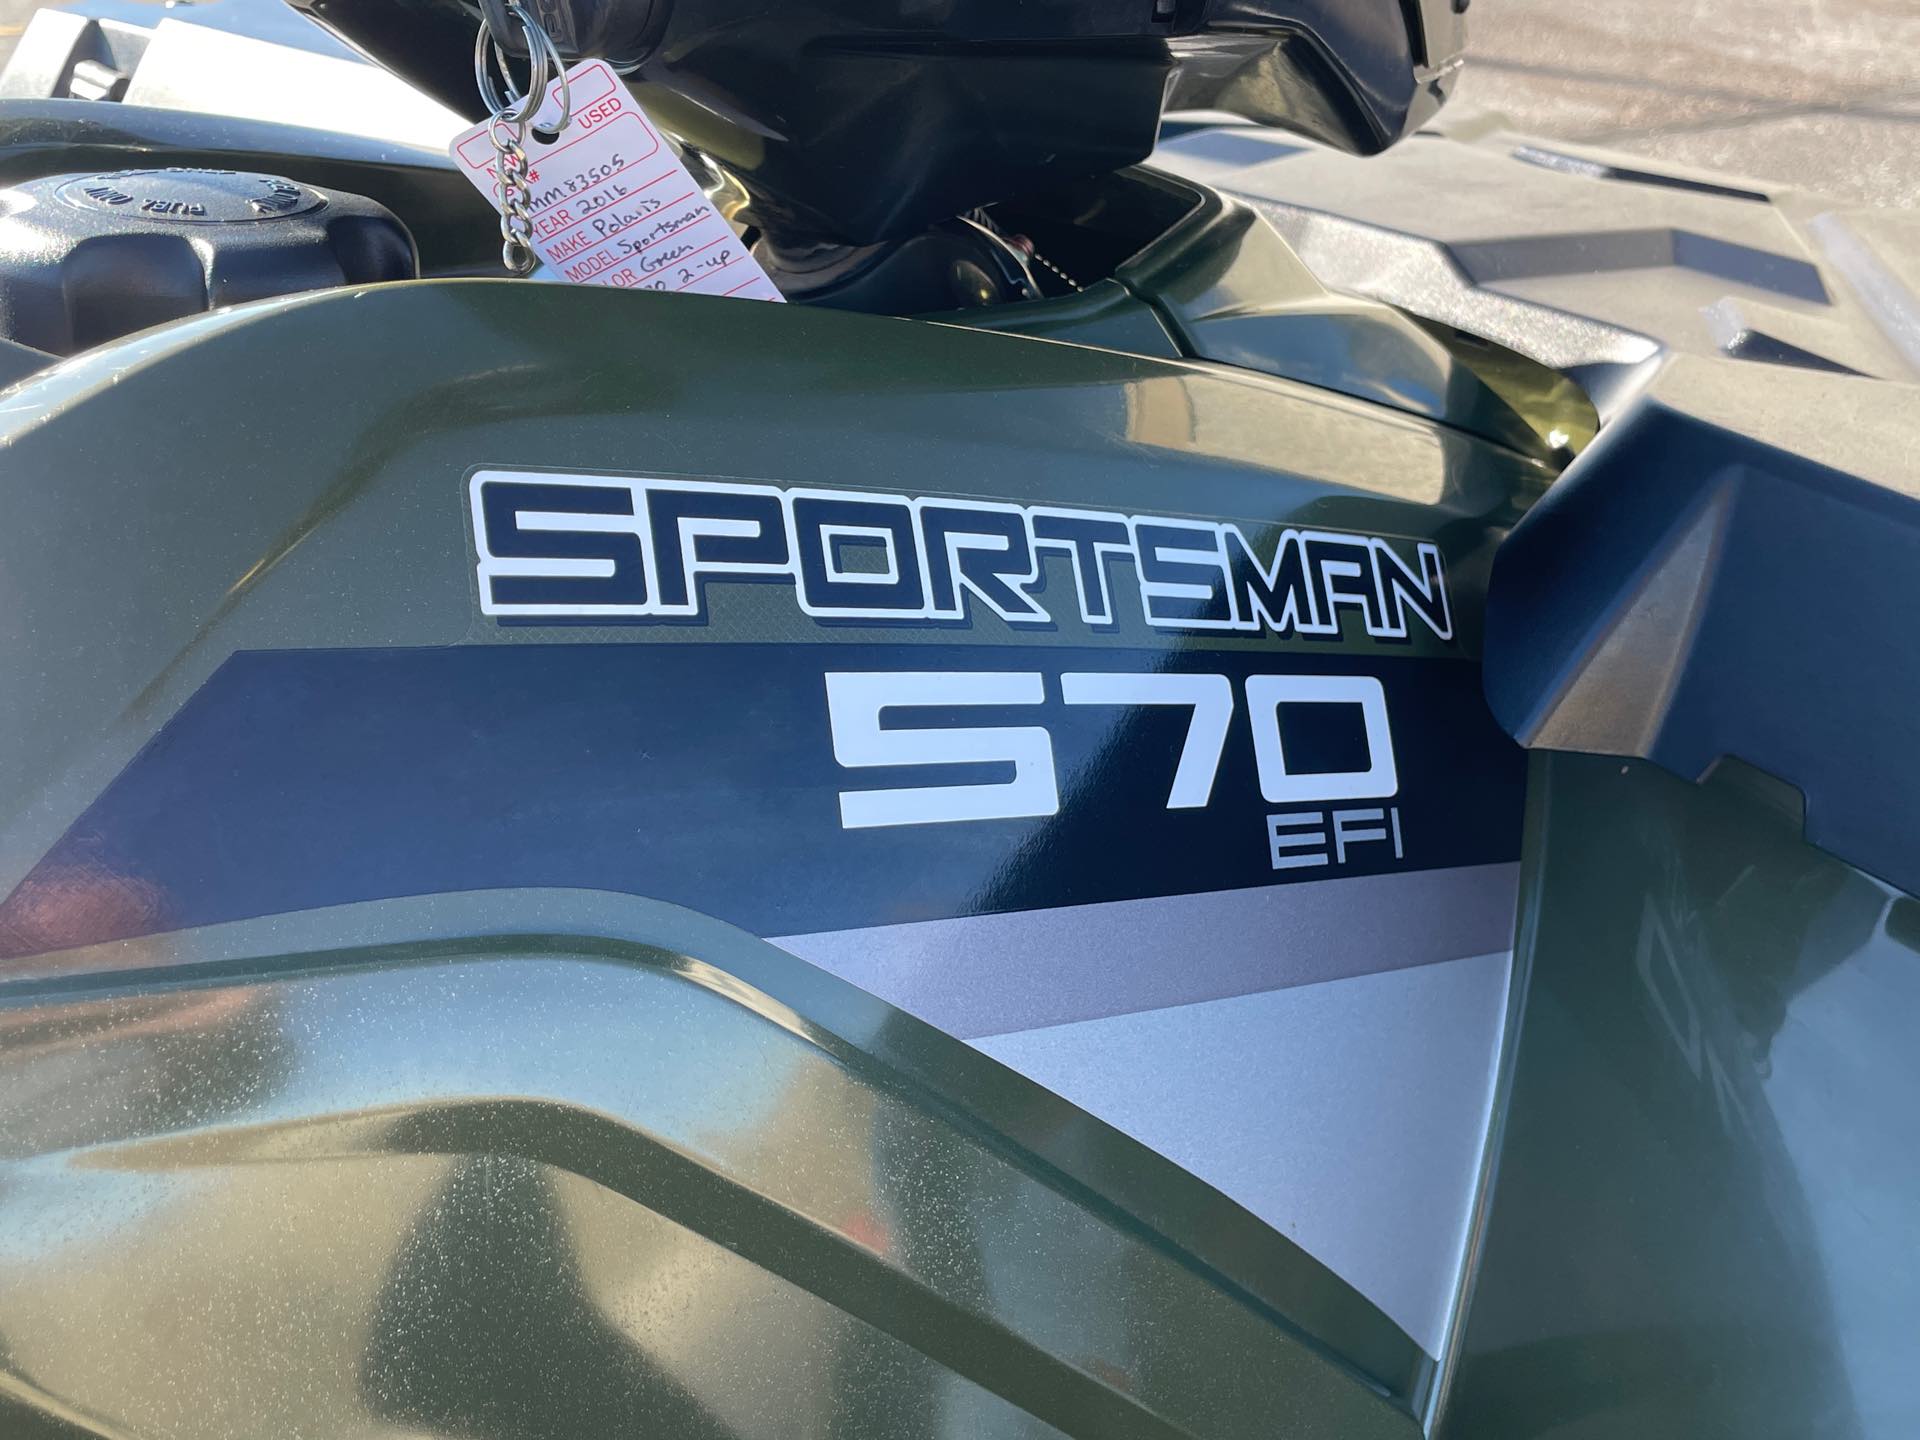 2016 Polaris Sportsman Touring 570 Base at Mount Rushmore Motorsports